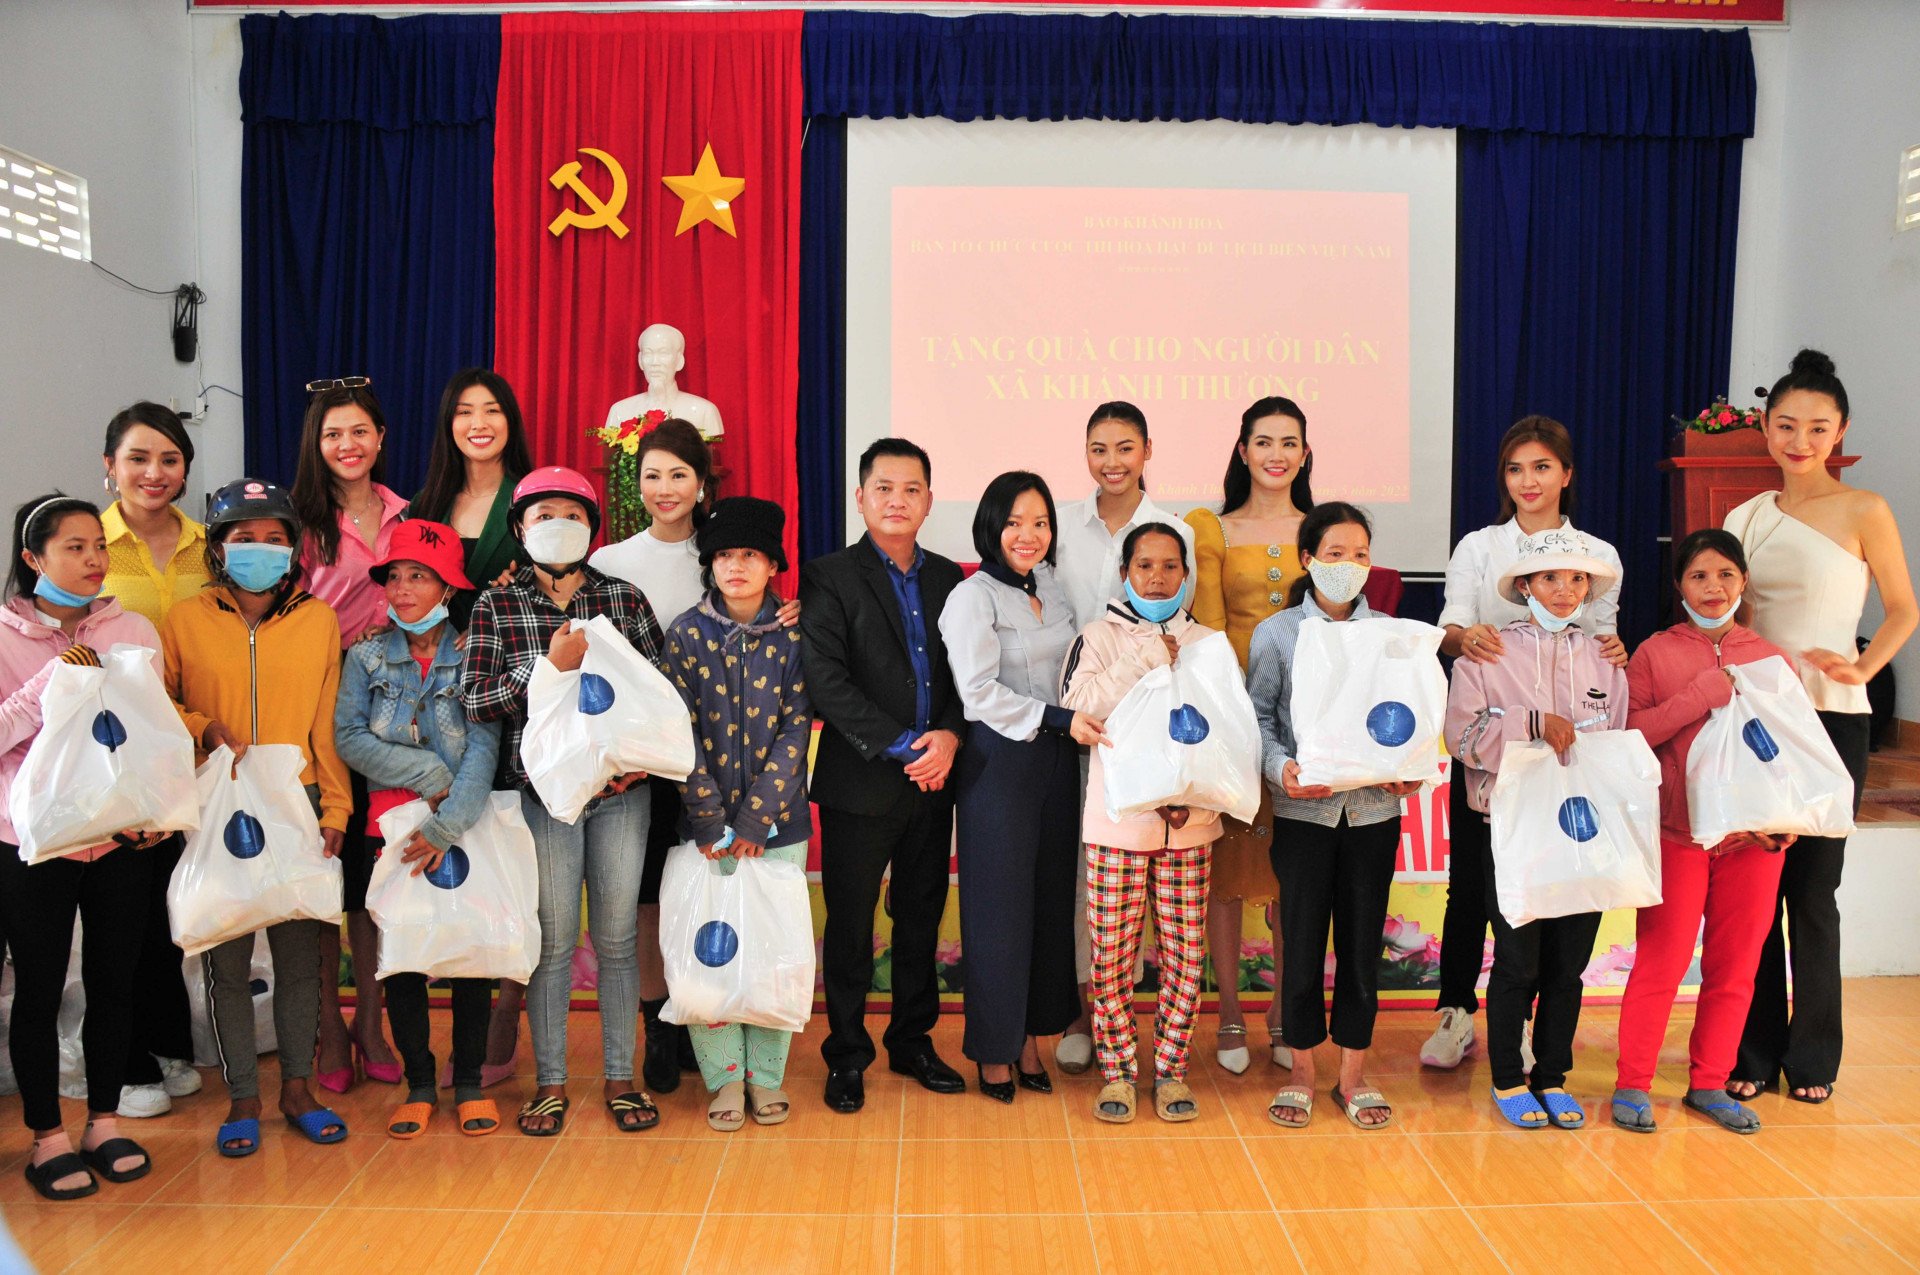 Lãnh đạo Báo Khánh Hoà, Ban tổ chức Cuộc thi Hoa hậu Du lịch biển Việt Nam cùng các đại sứ, người đẹp trao quà cho người dân